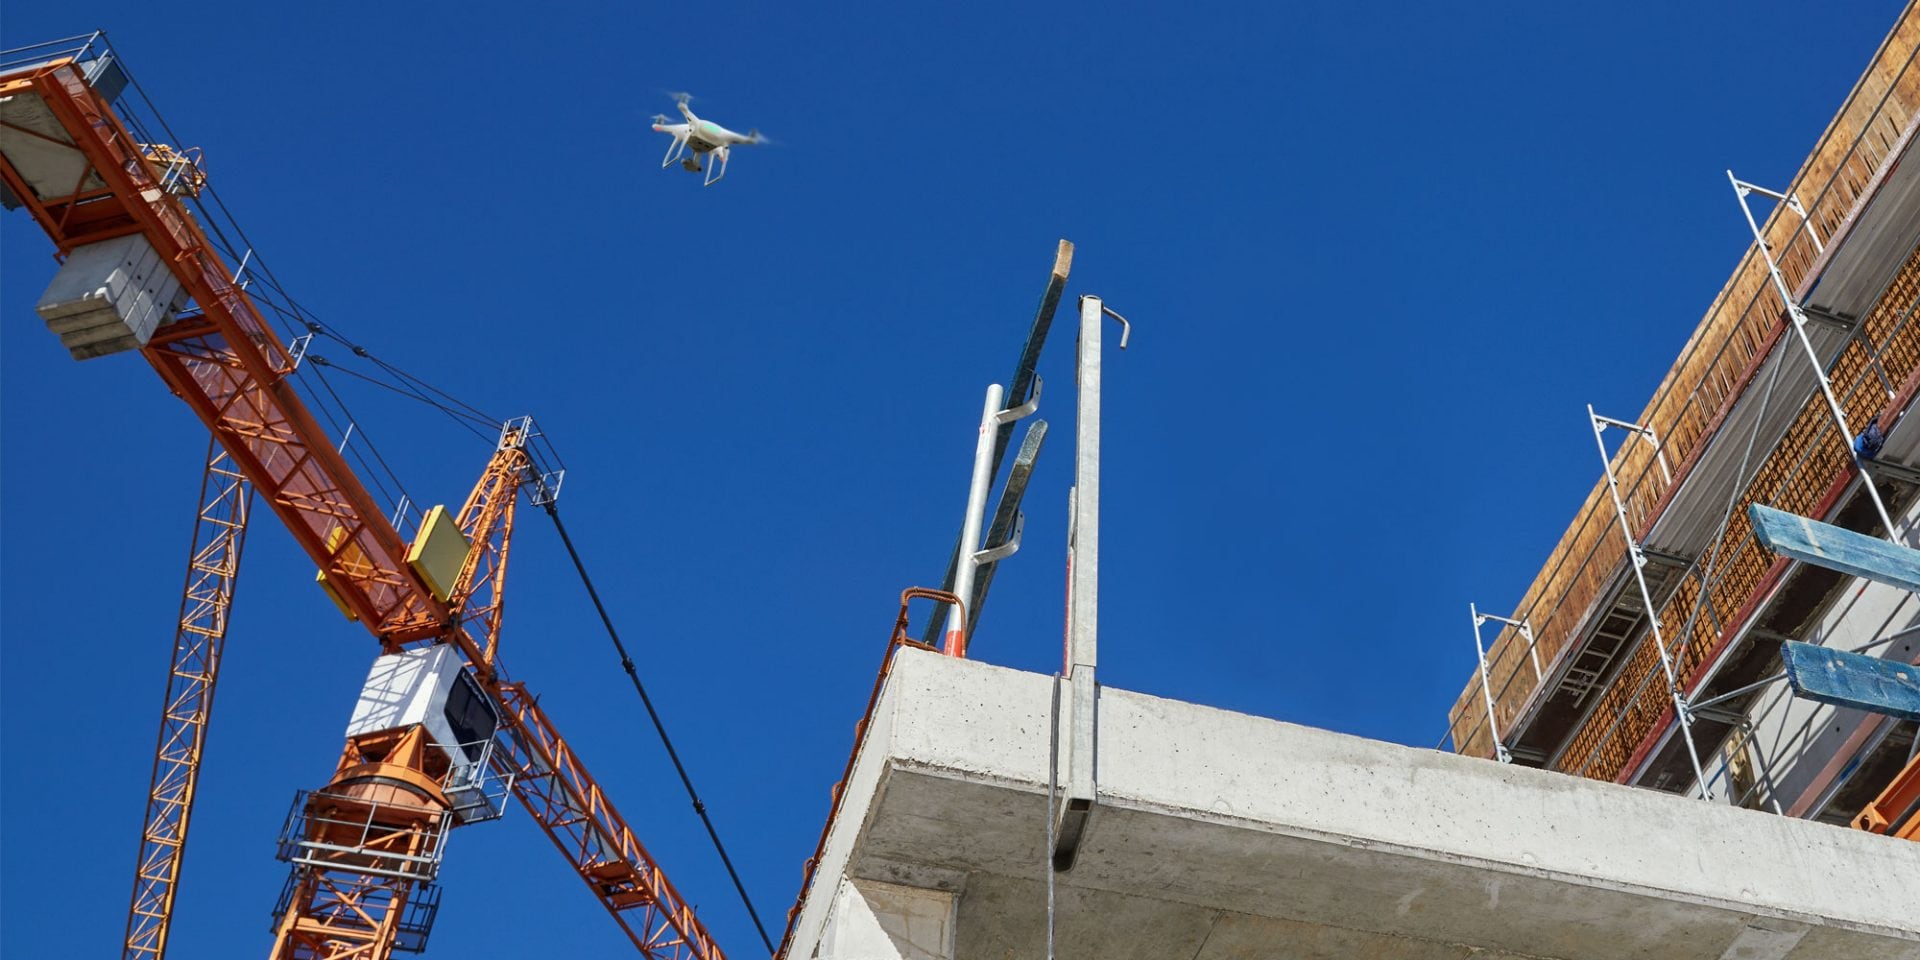 Drone nad placem budowy